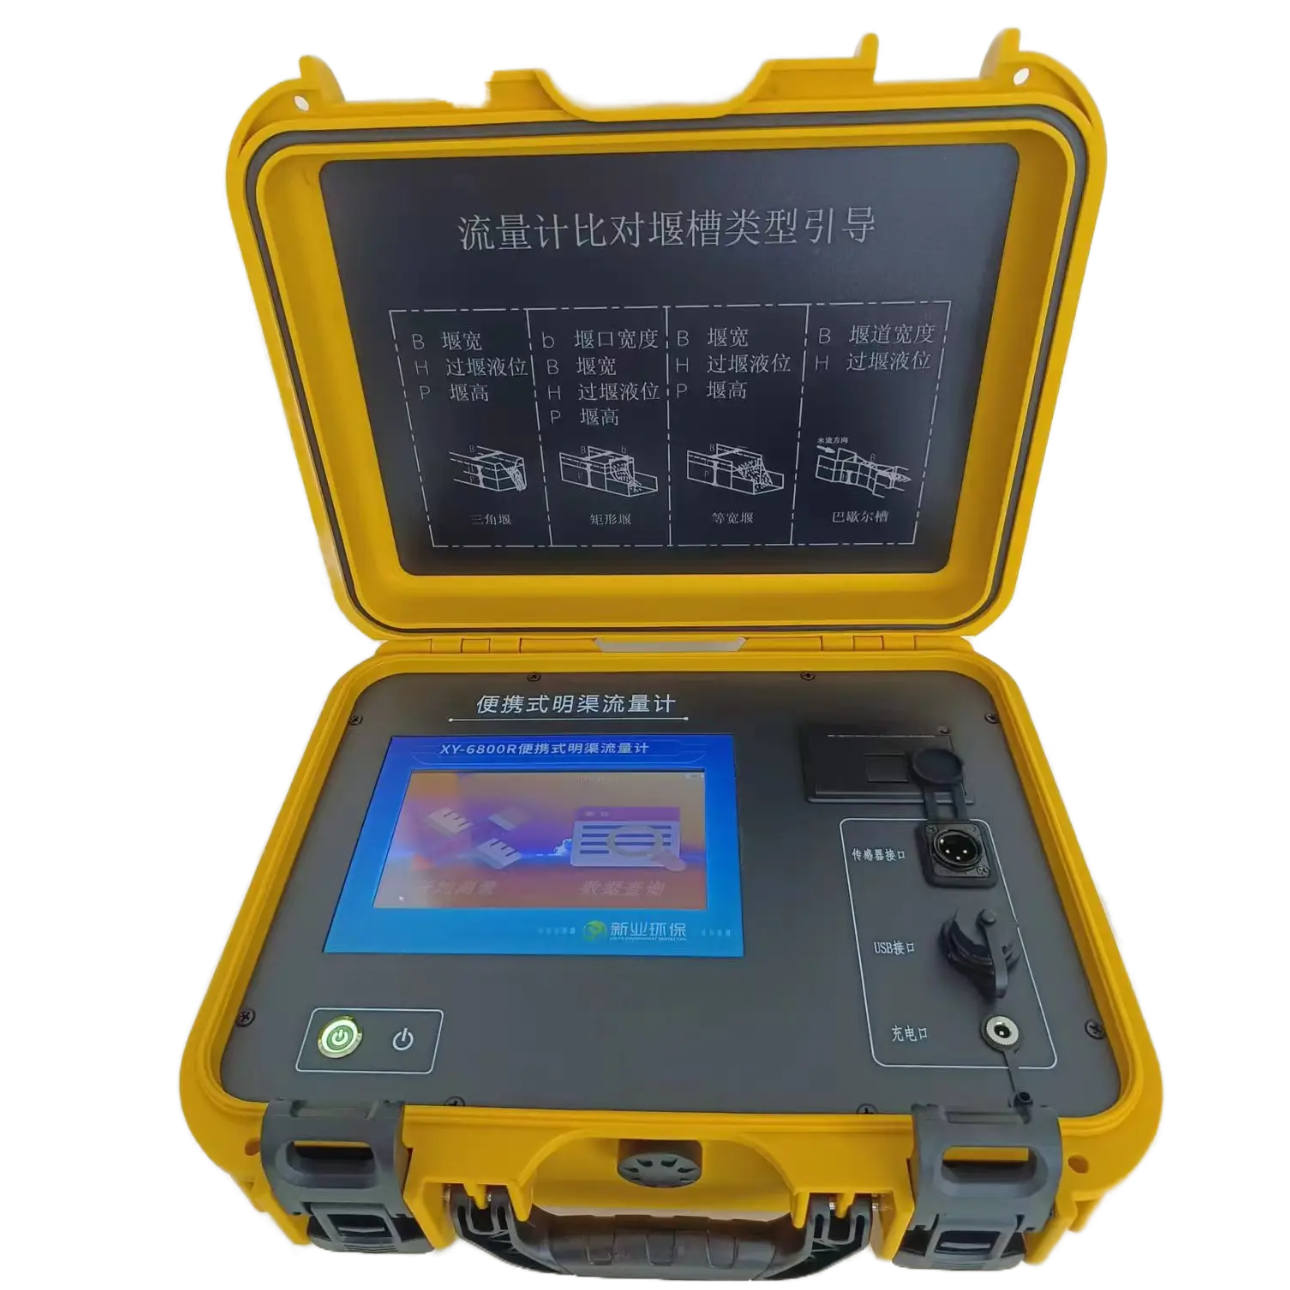 青岛新业厂家直销XY-6800R型便携式超声波明渠流量计价格优惠